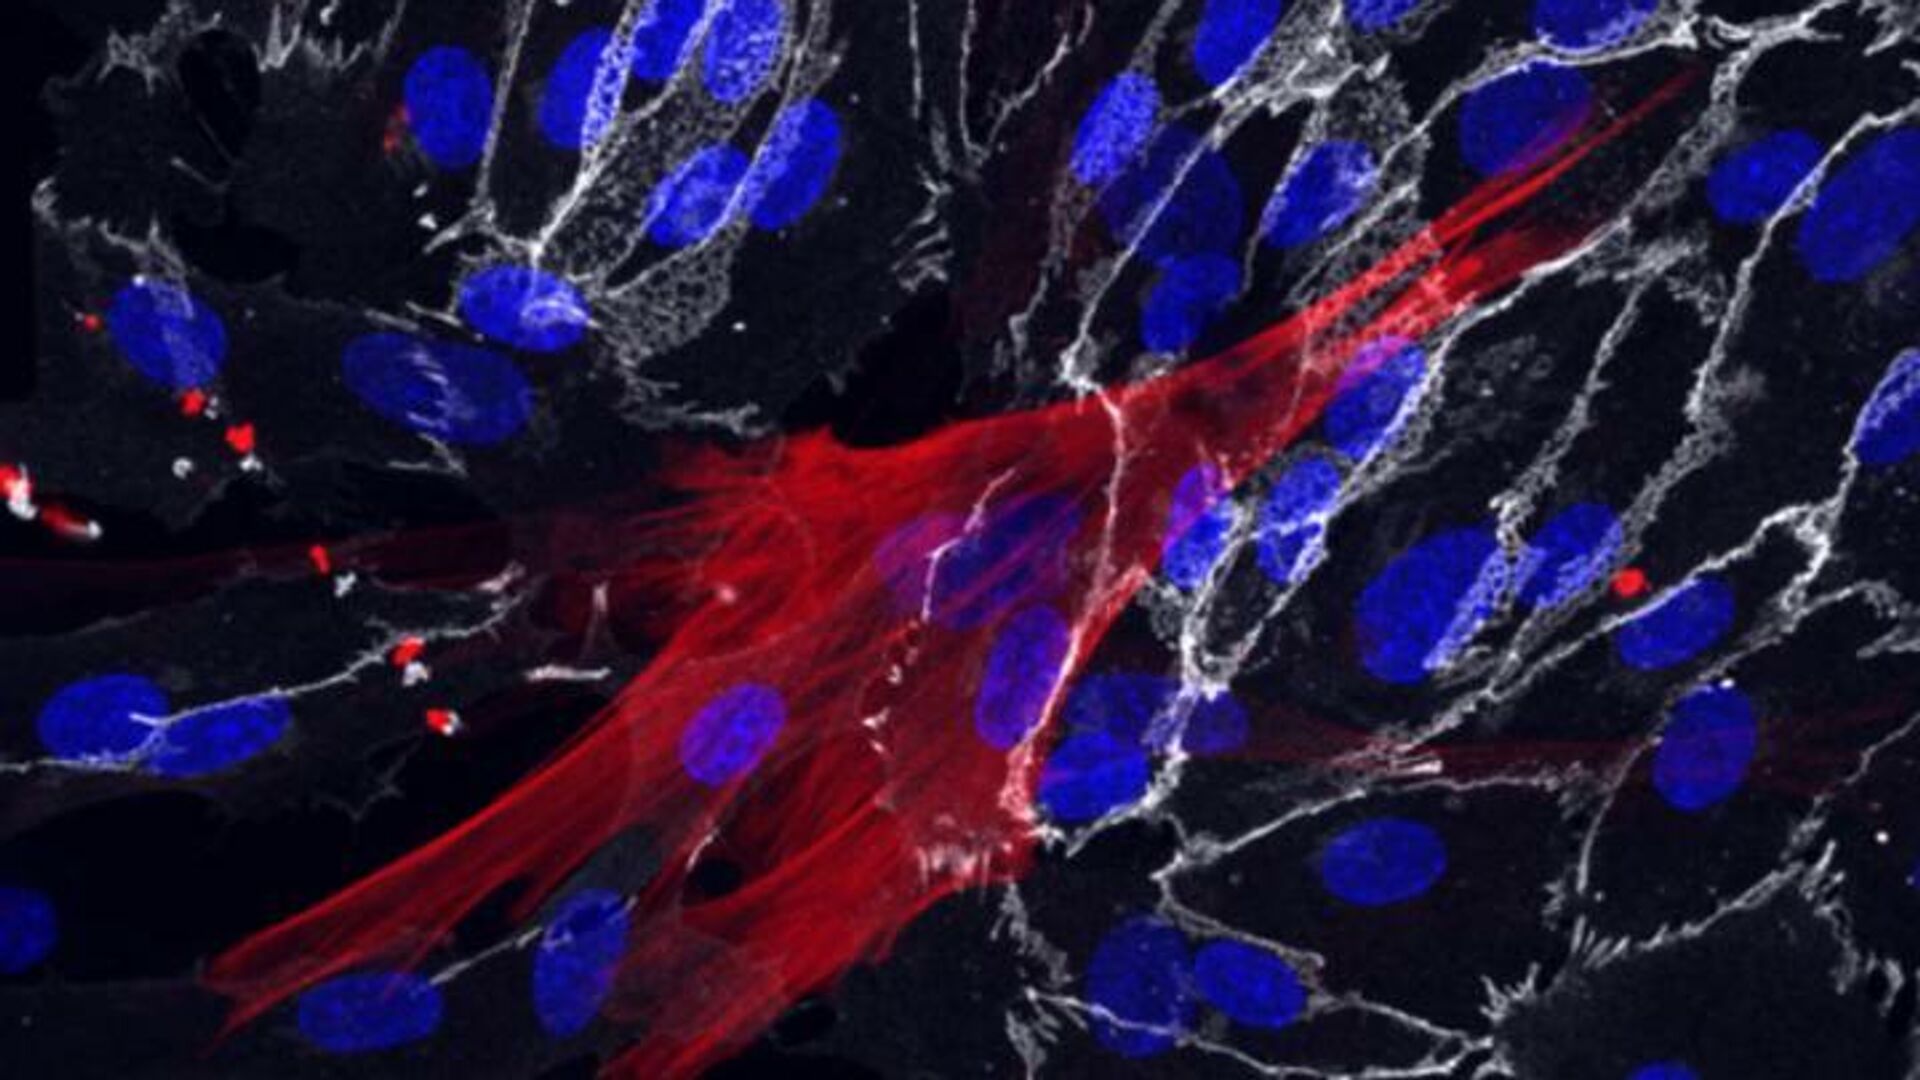 Фибробласты кожи, перепрограммированные в клетки гладких мышц (красные) и эндотелиальные клетки (белые), которые окружают кровеносные сосуды. Ядра клеток показаны синим цветом - РИА Новости, 1920, 03.03.2021